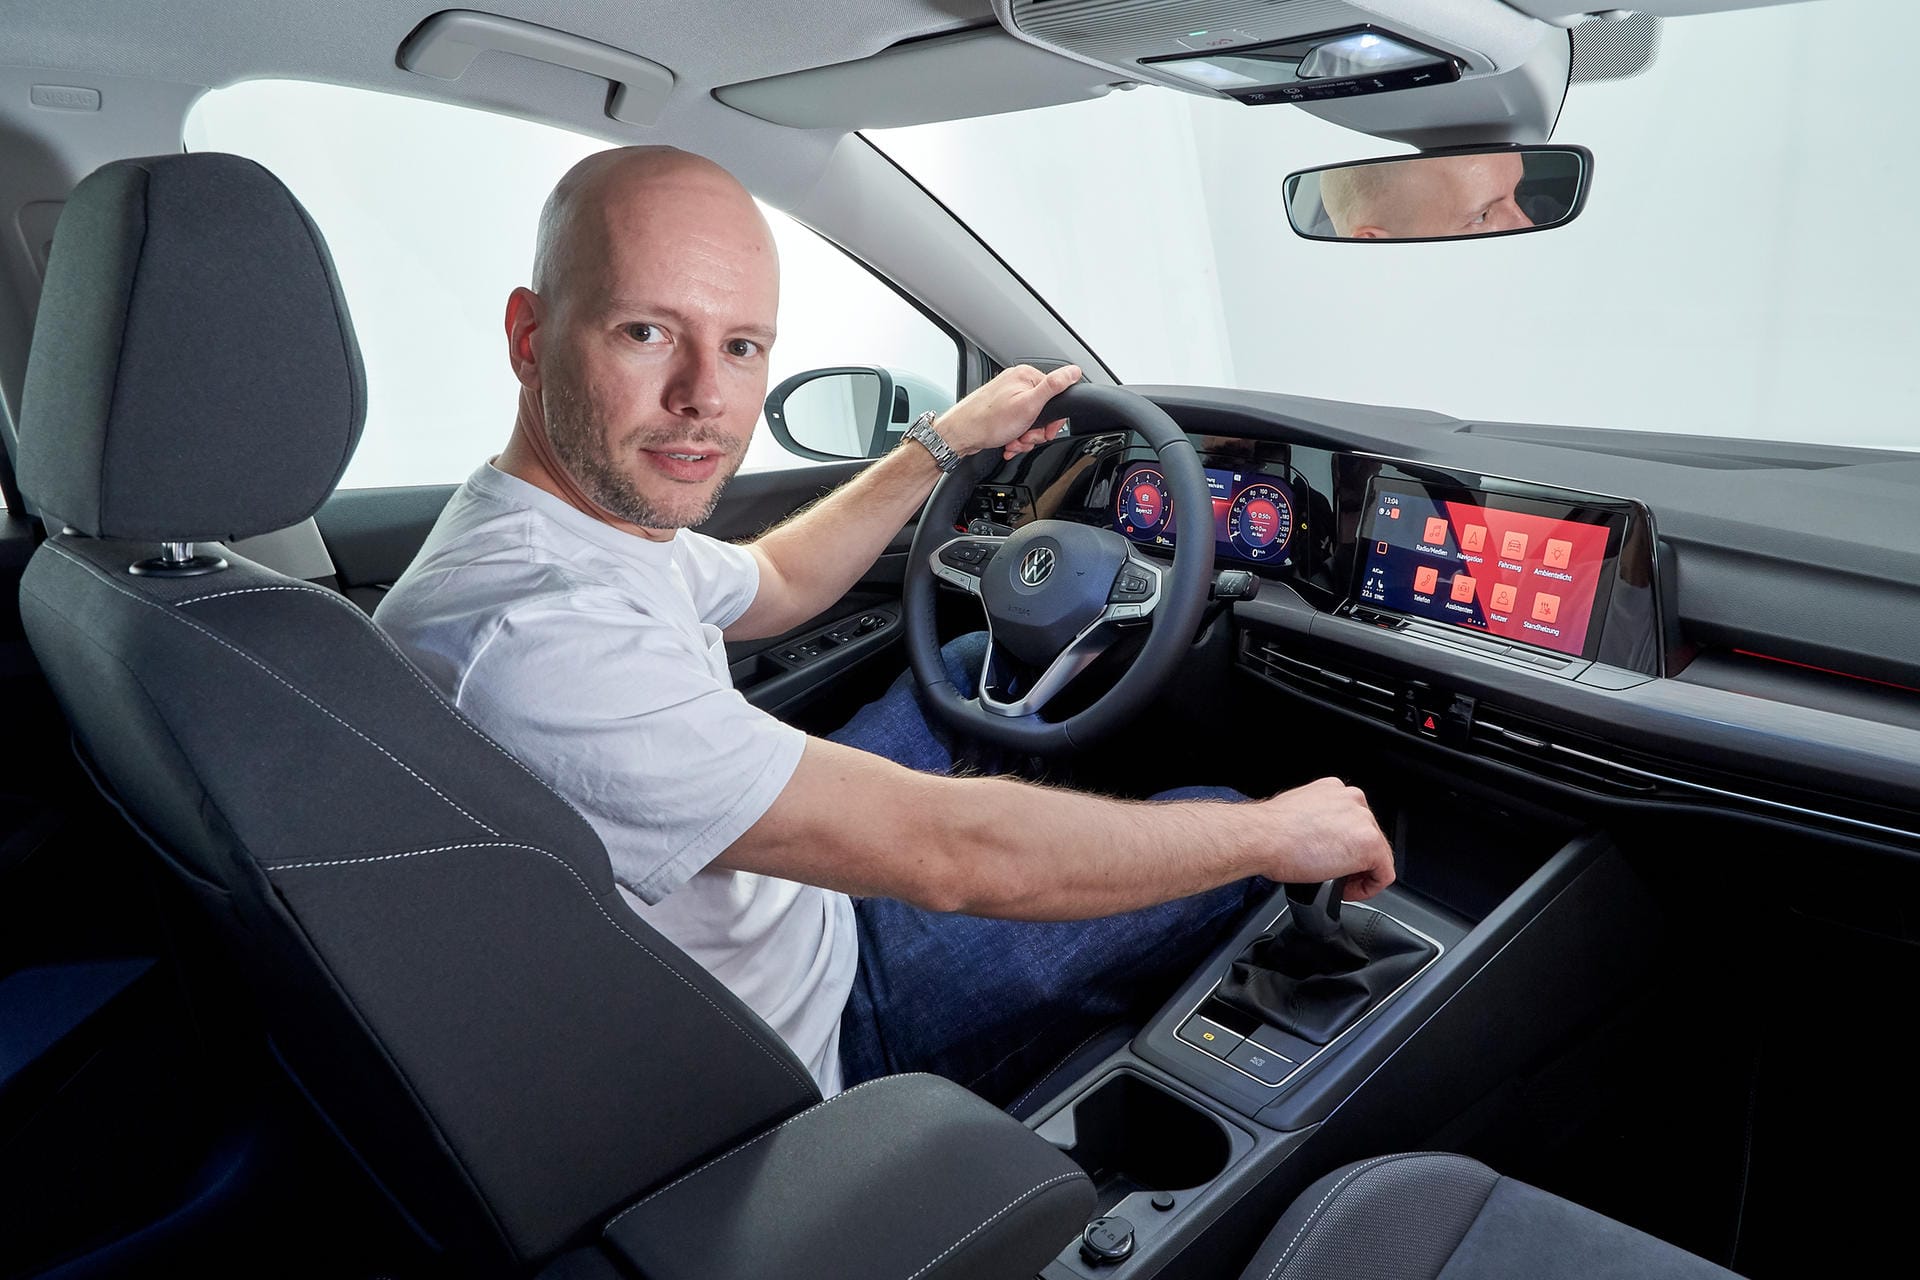 Digitales Cockpit: Wesentliche Funktionen lassen sich am Touchscreen steuern – oder per Sprachbefehl. Ein 8-Zoll-Bildschirm ist Teil der Basisausstattung, das größere 10-Zoll-Display gibt es gegen Aufpreis.